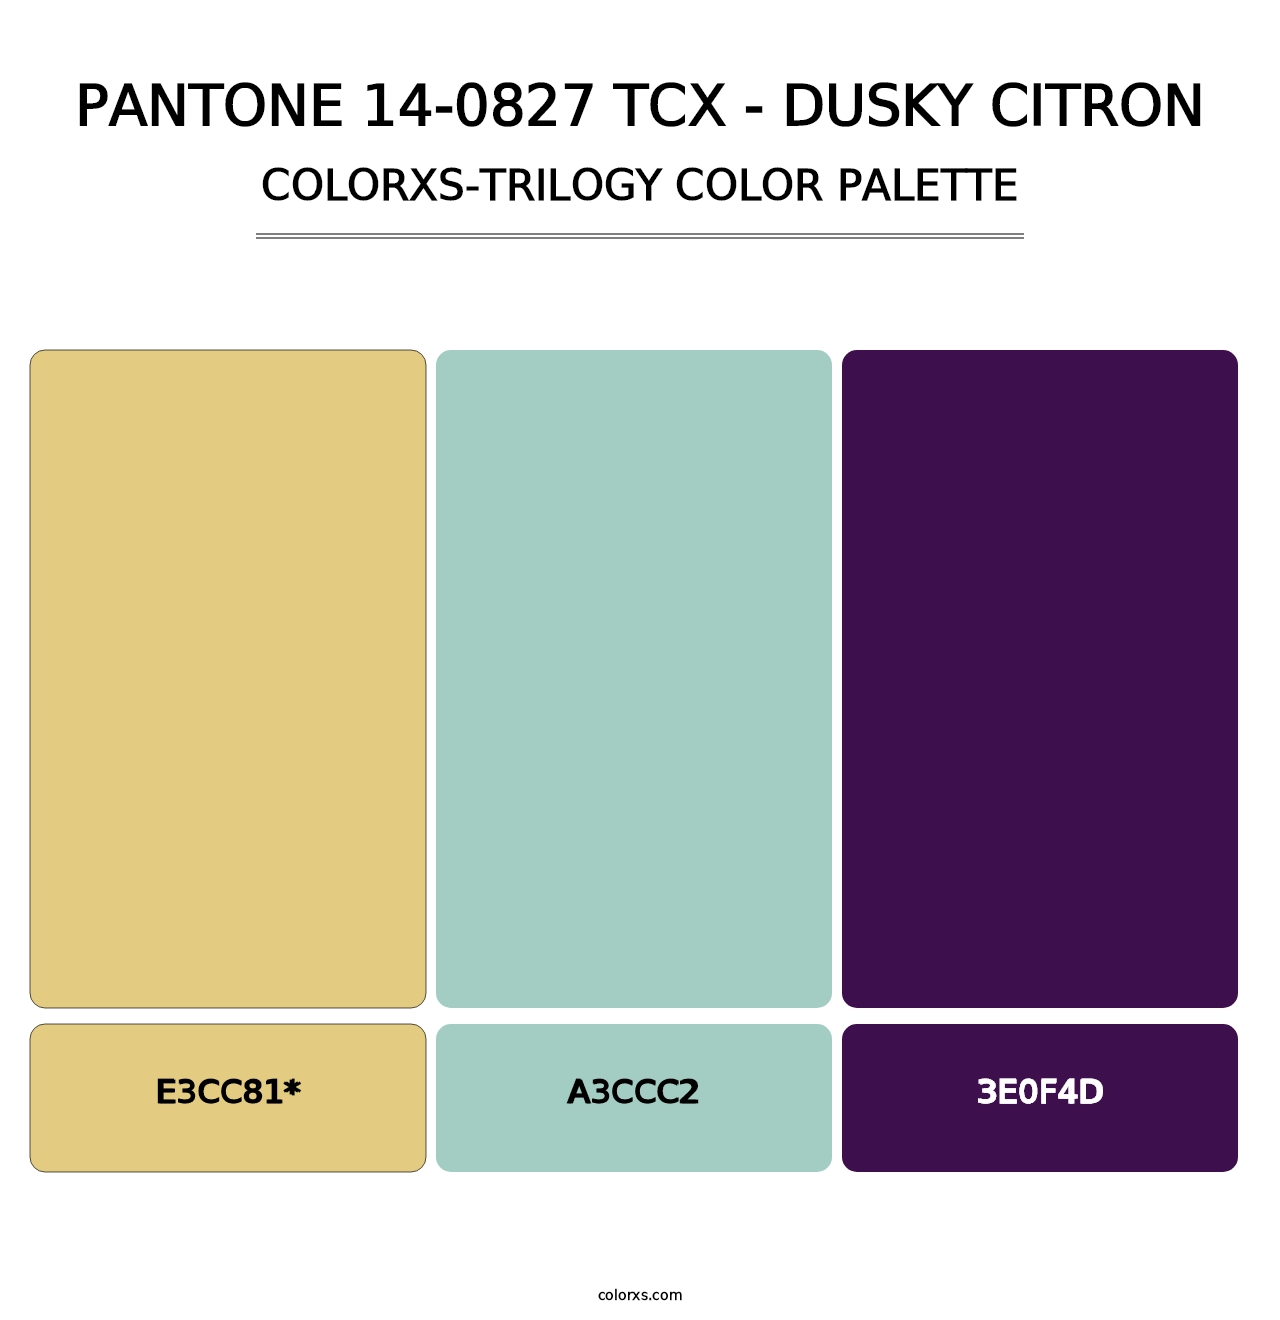 PANTONE 14-0827 TCX - Dusky Citron - Colorxs Trilogy Palette